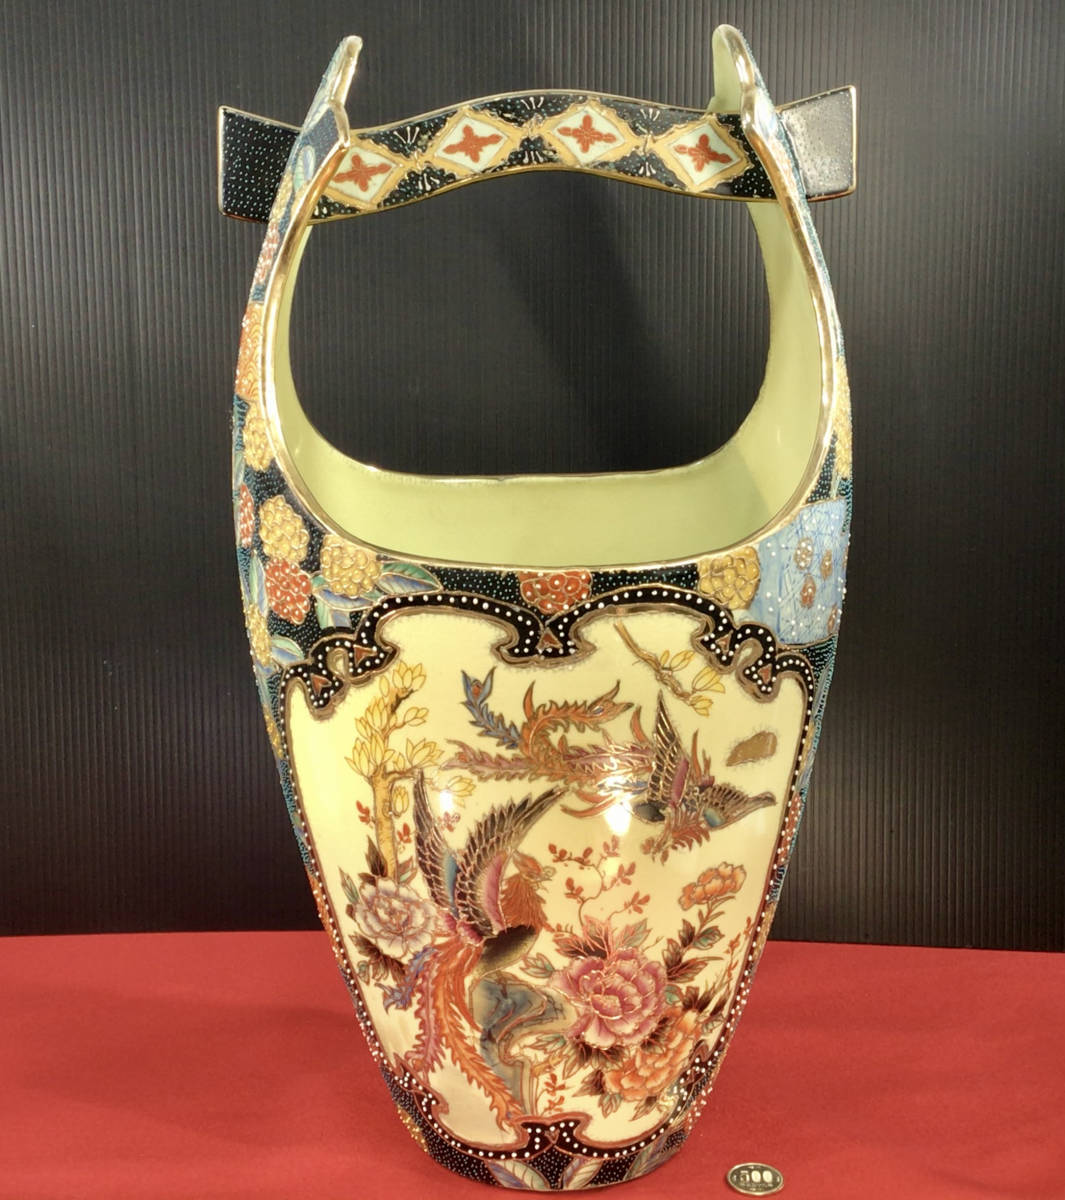 【昭和レトロ・アンティーク・美品】中国製造 色絵陶磁器 手桶、豪華絢爛 鳳凰と牡丹花の手描き絵柄、高さ約52センチ 巾約28センチ、箱無し